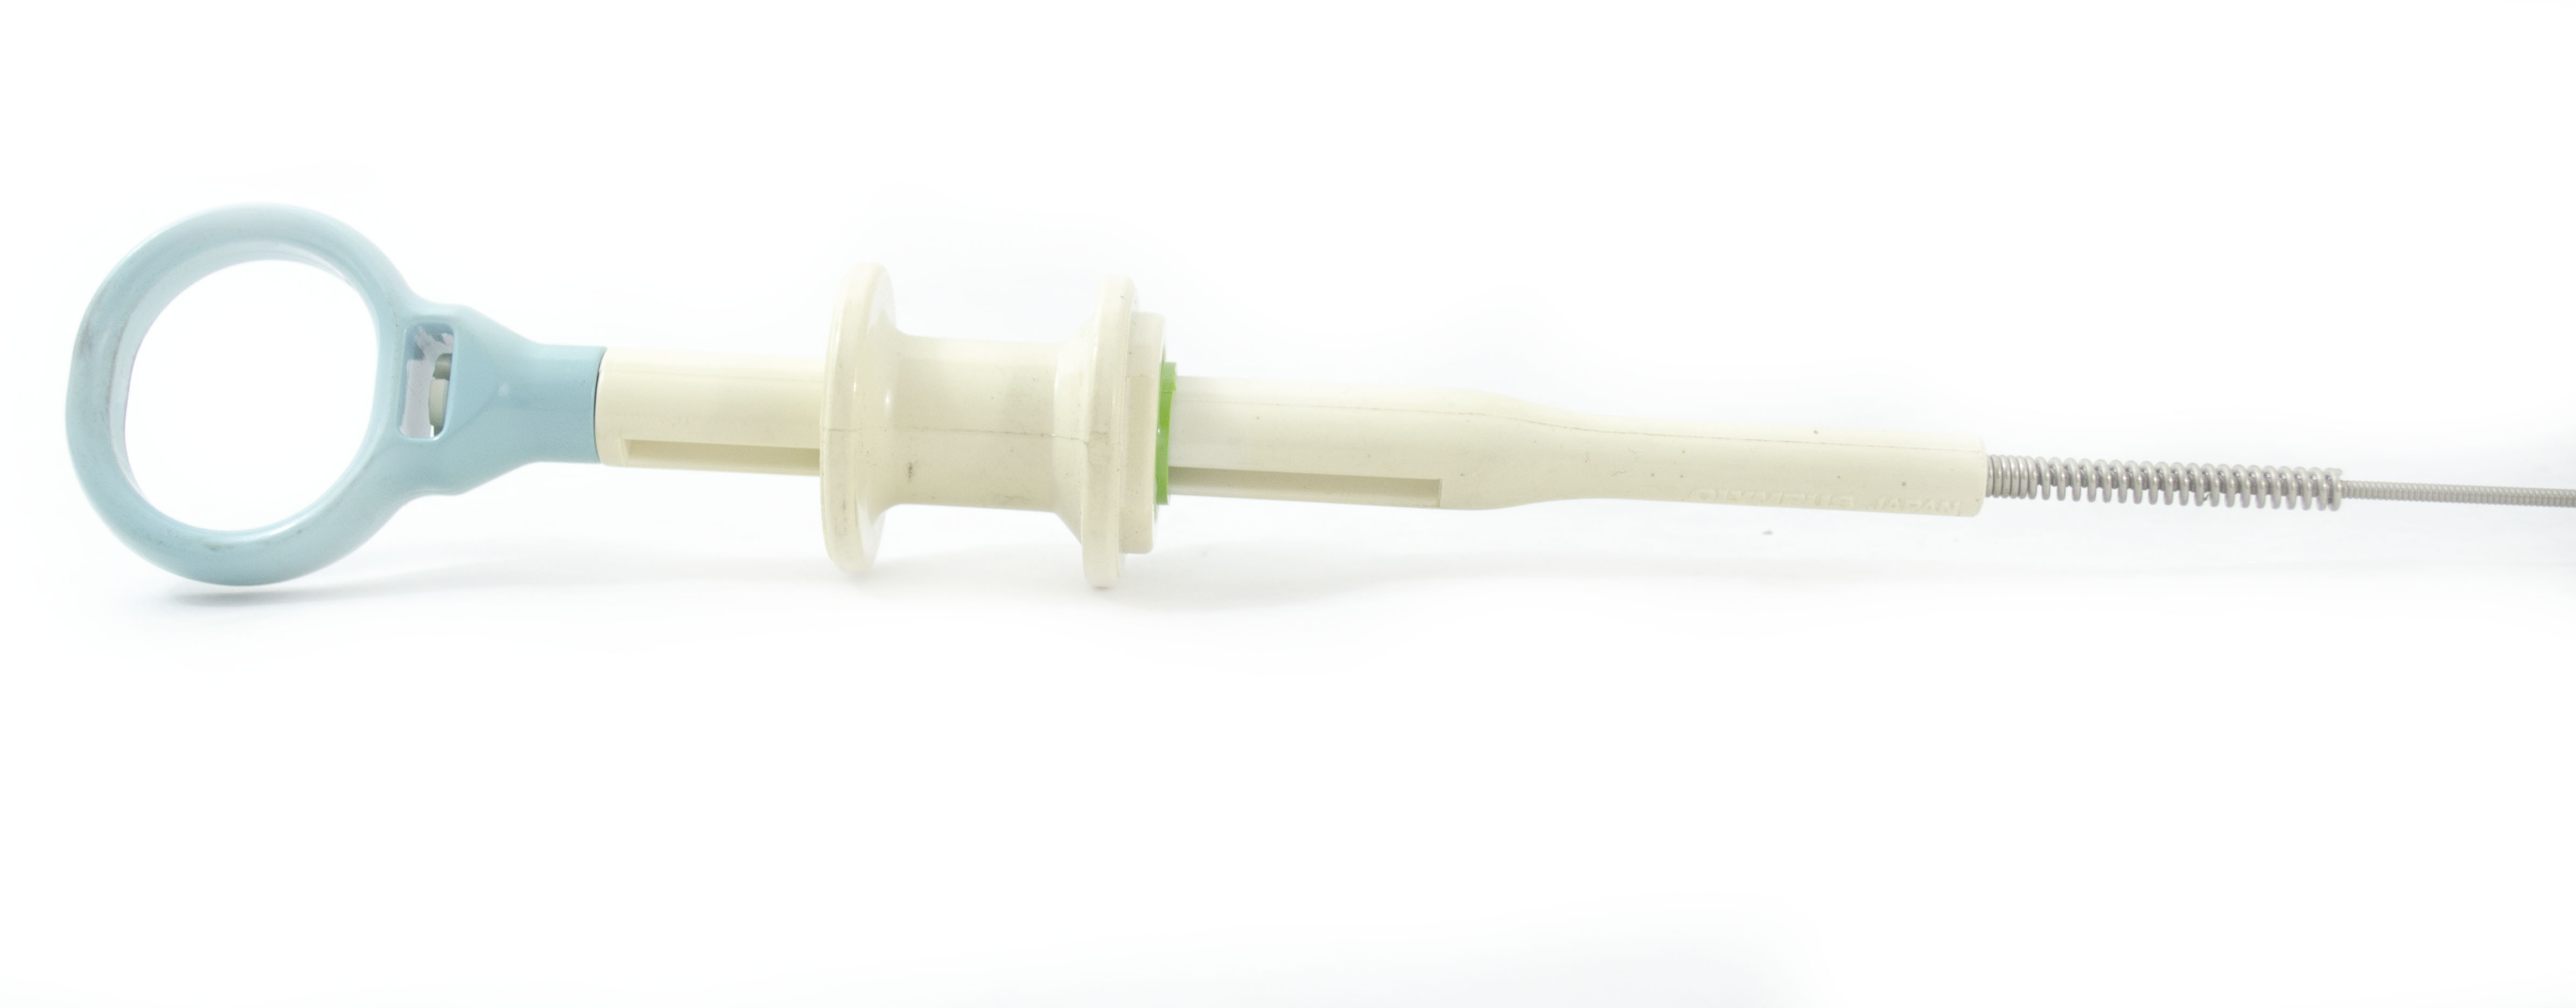 Olympus Reusable Biopsy Forceps - FB-21SX-1 (Original Packaging)